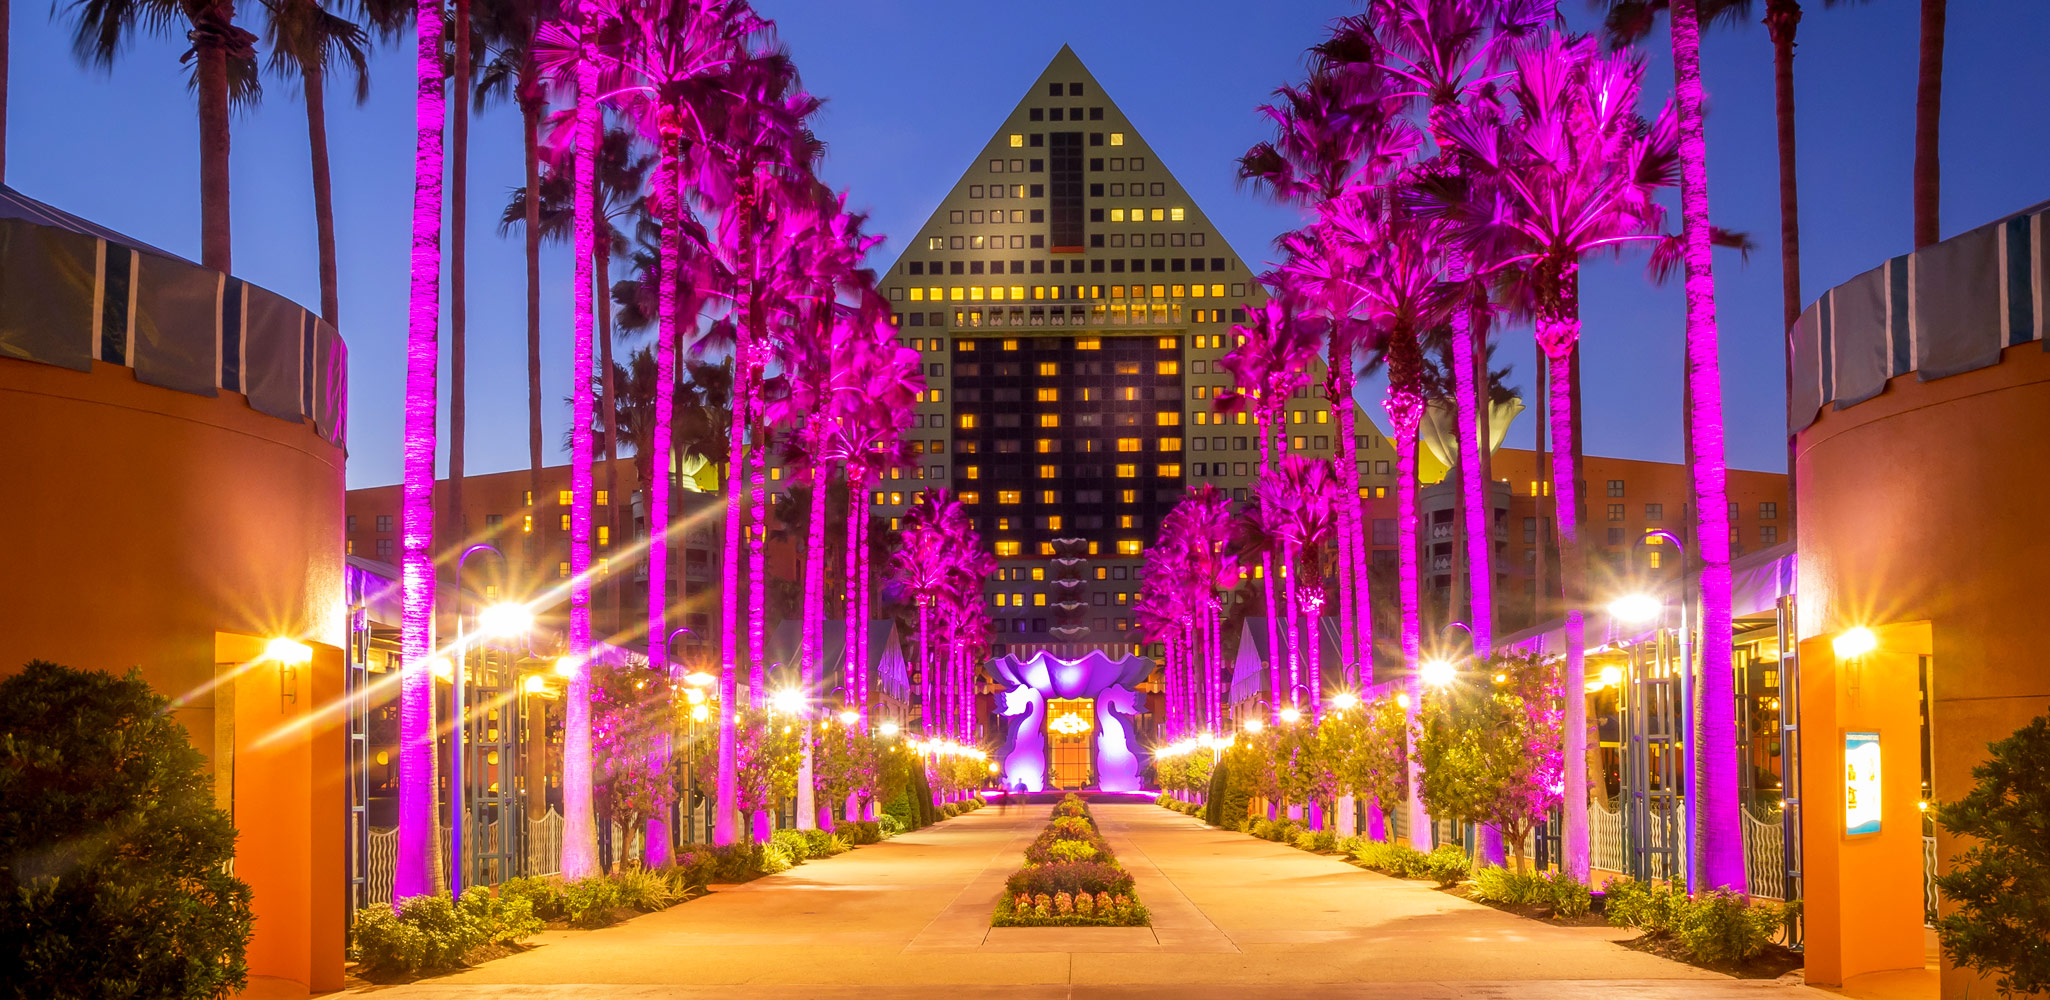 Best Disneyland off-site hotels worth staying in Anaheim - Born Free